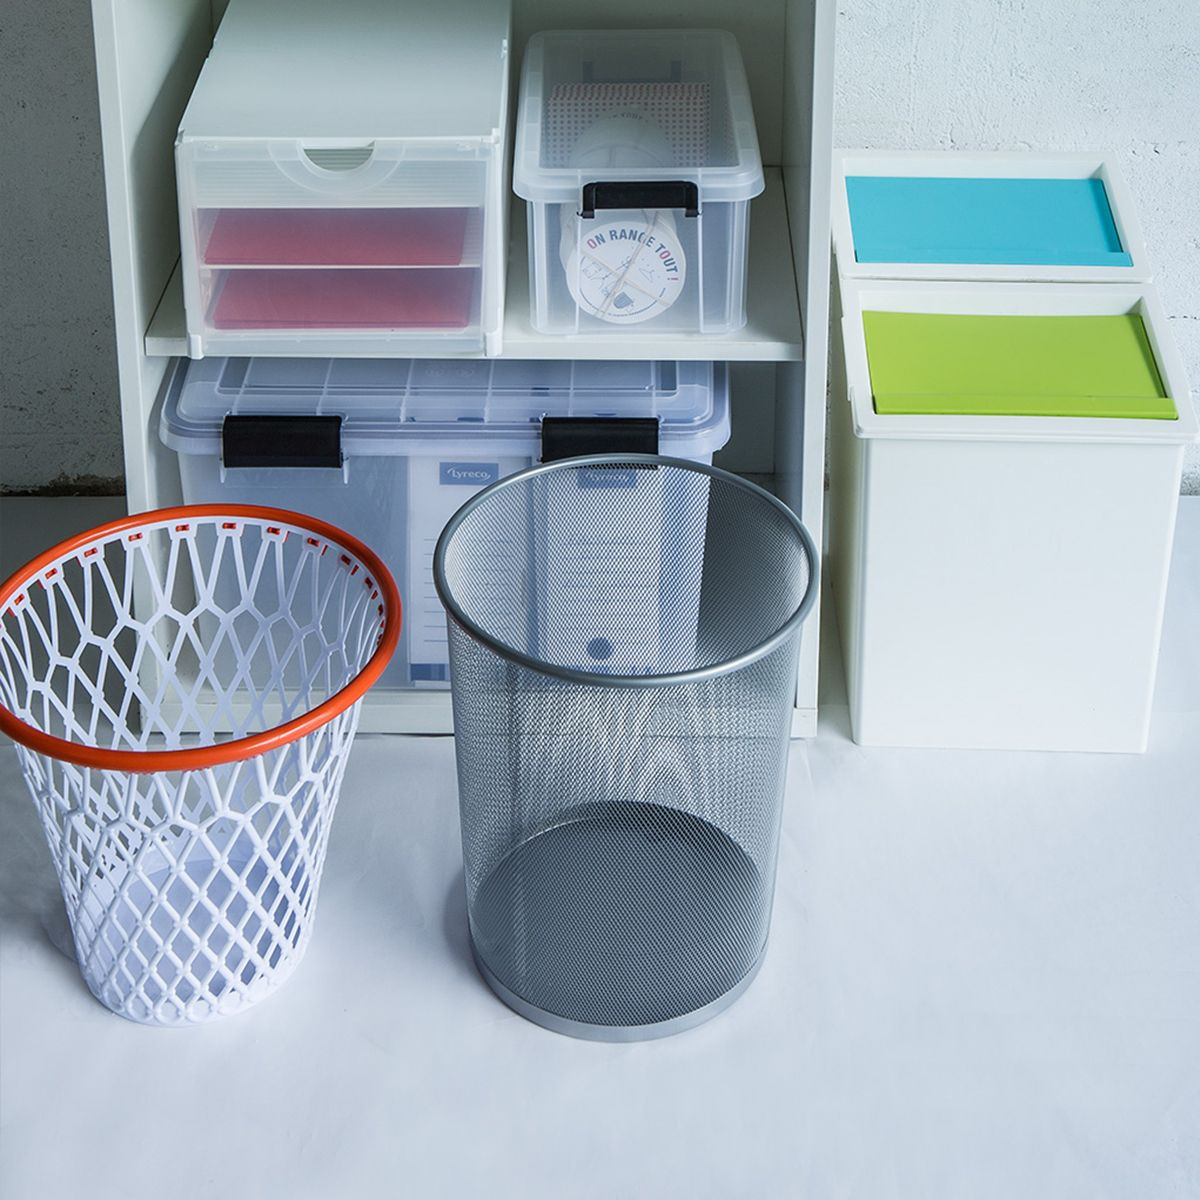 Gadget bureau : Panier de basket pour poubelle - 7,92 €